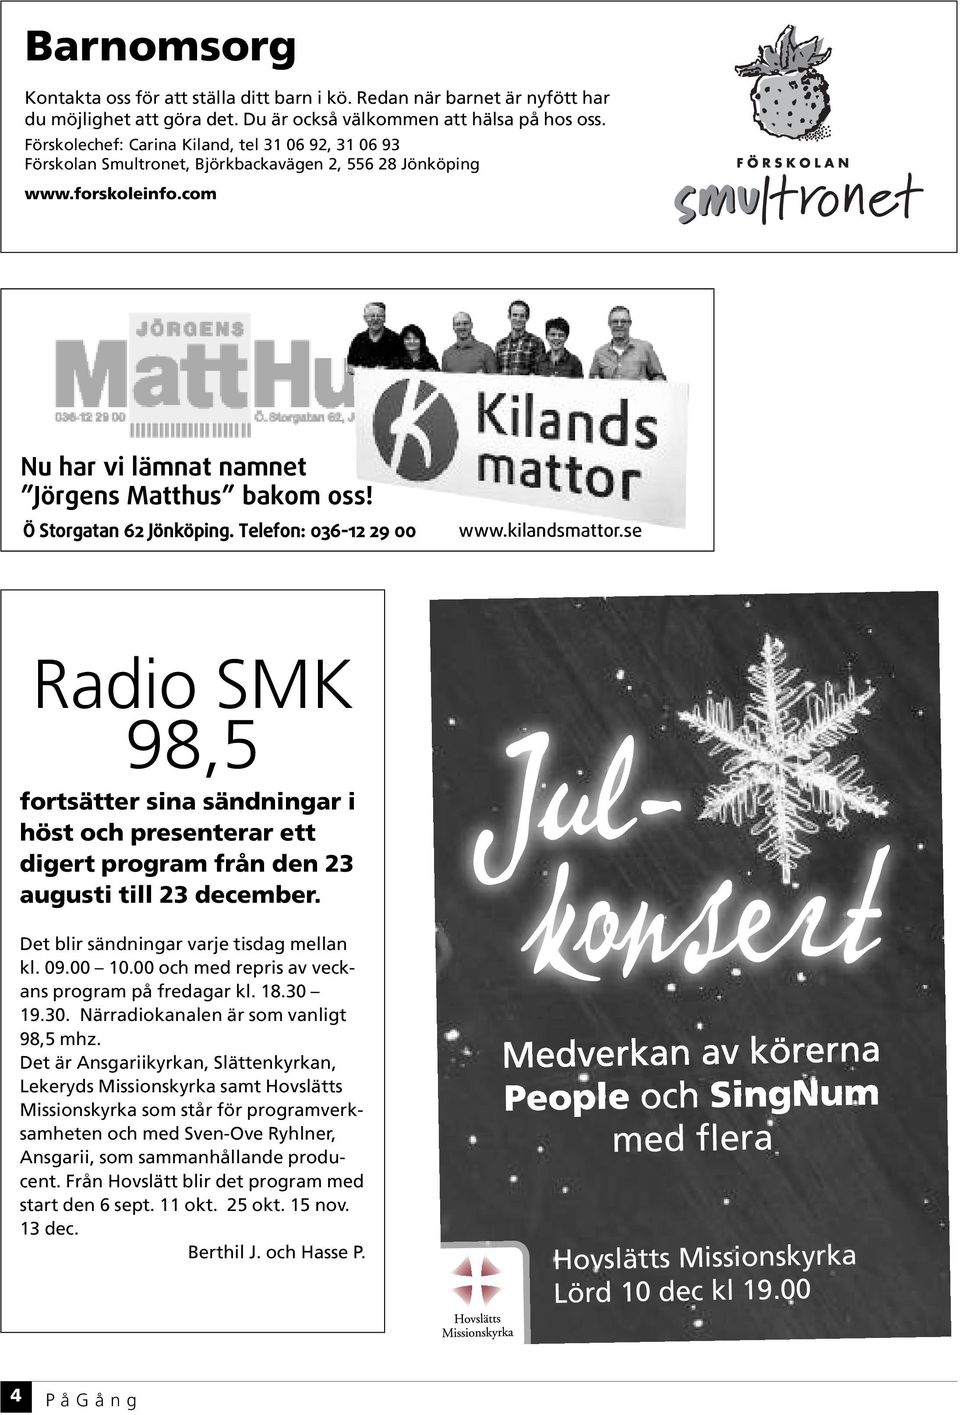 Ö Storgatan 62 Jönköping. Telefon: 036-12 29 00 www.kilandsmattor.se Radio SMK 98,5 fortsätter sina sändningar i höst och presenterar ett digert program från den 23 augusti till 23 december.